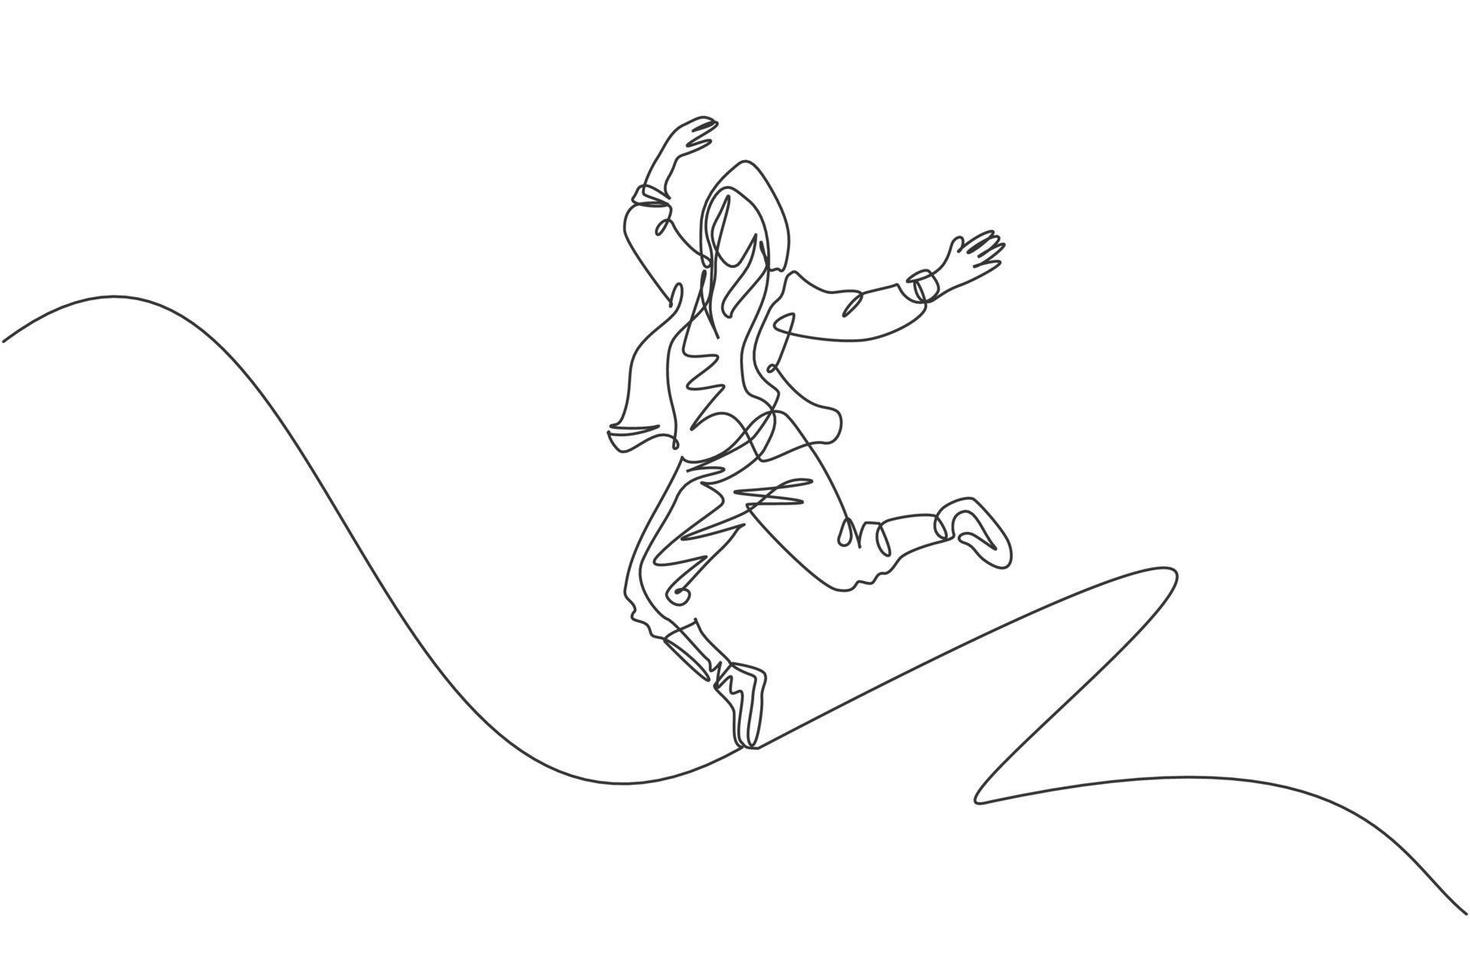 een doorlopende lijntekening van jonge sportieve breakdance-man toont hiphop-springende dansstijl op straat. stedelijke levensstijl sport concept. dynamische enkele lijn tekenen ontwerp vector grafische afbeelding